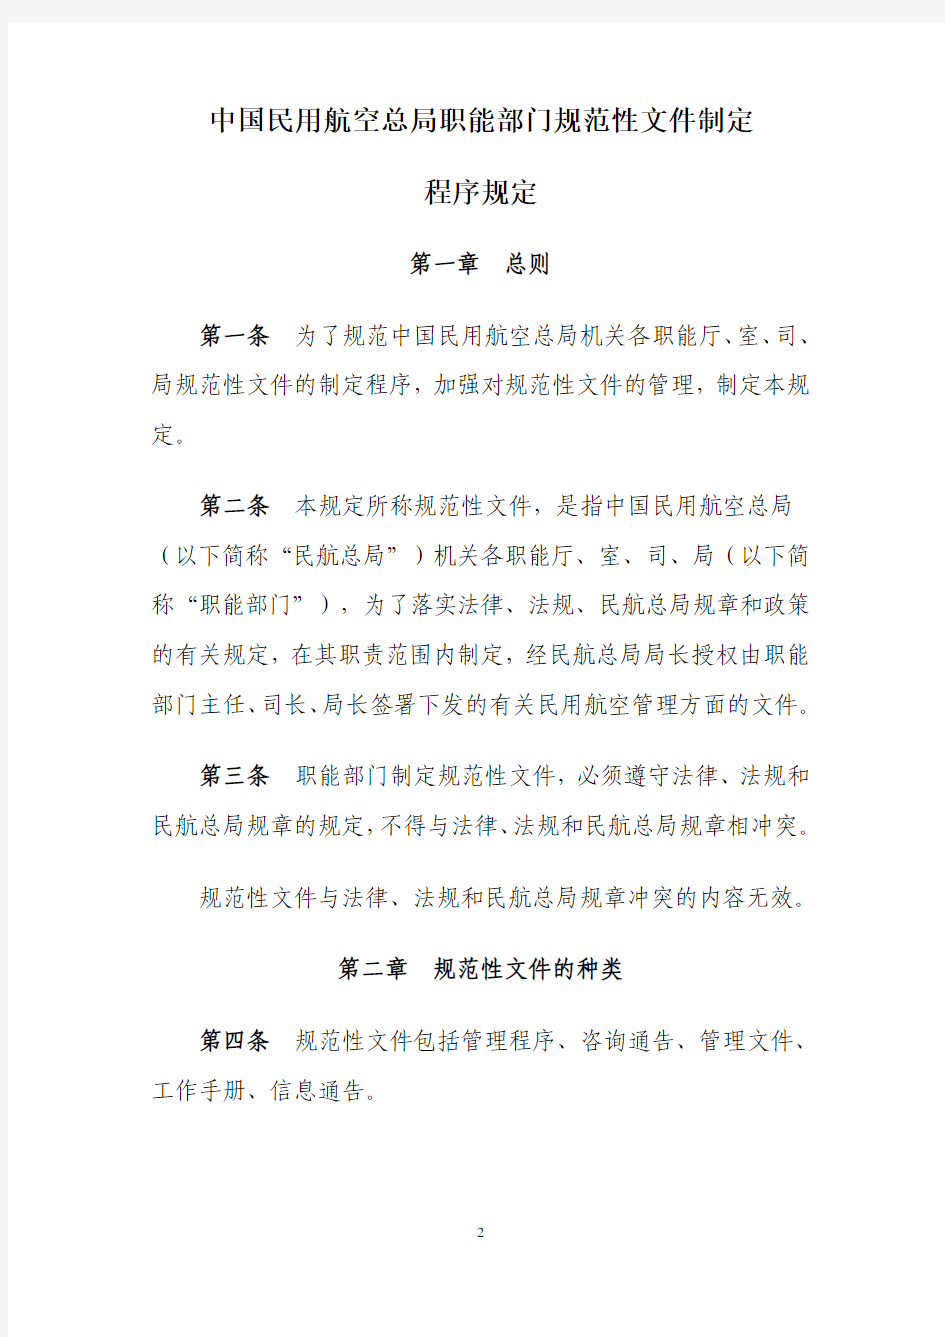 CCAR-12LR-R1中国民用航空总局职能部门规范性文件制定程序规定